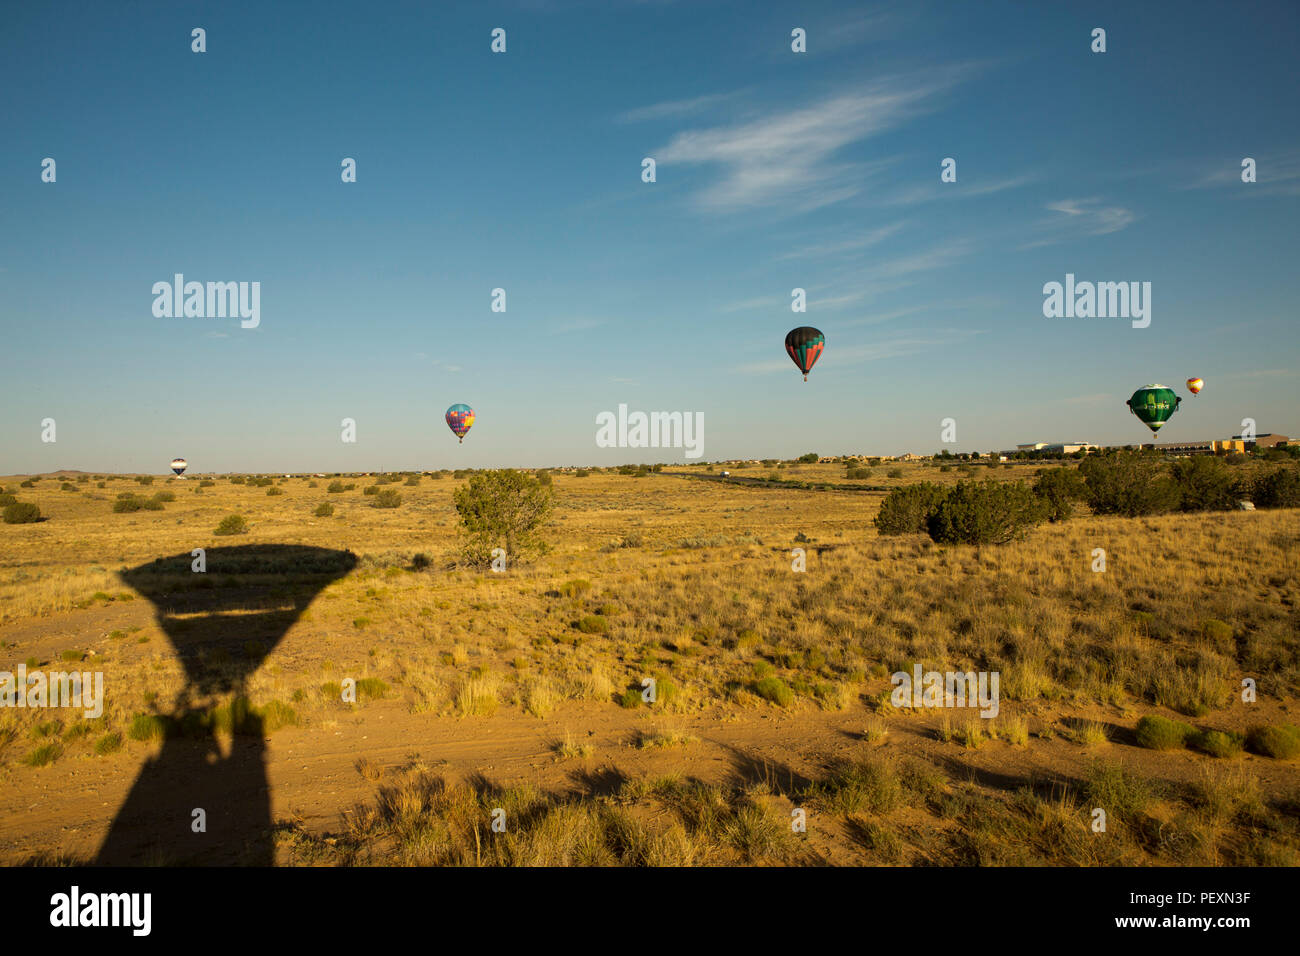 Hot air balloons flying in Albuquerque, New Mexico, USA Stock Photo